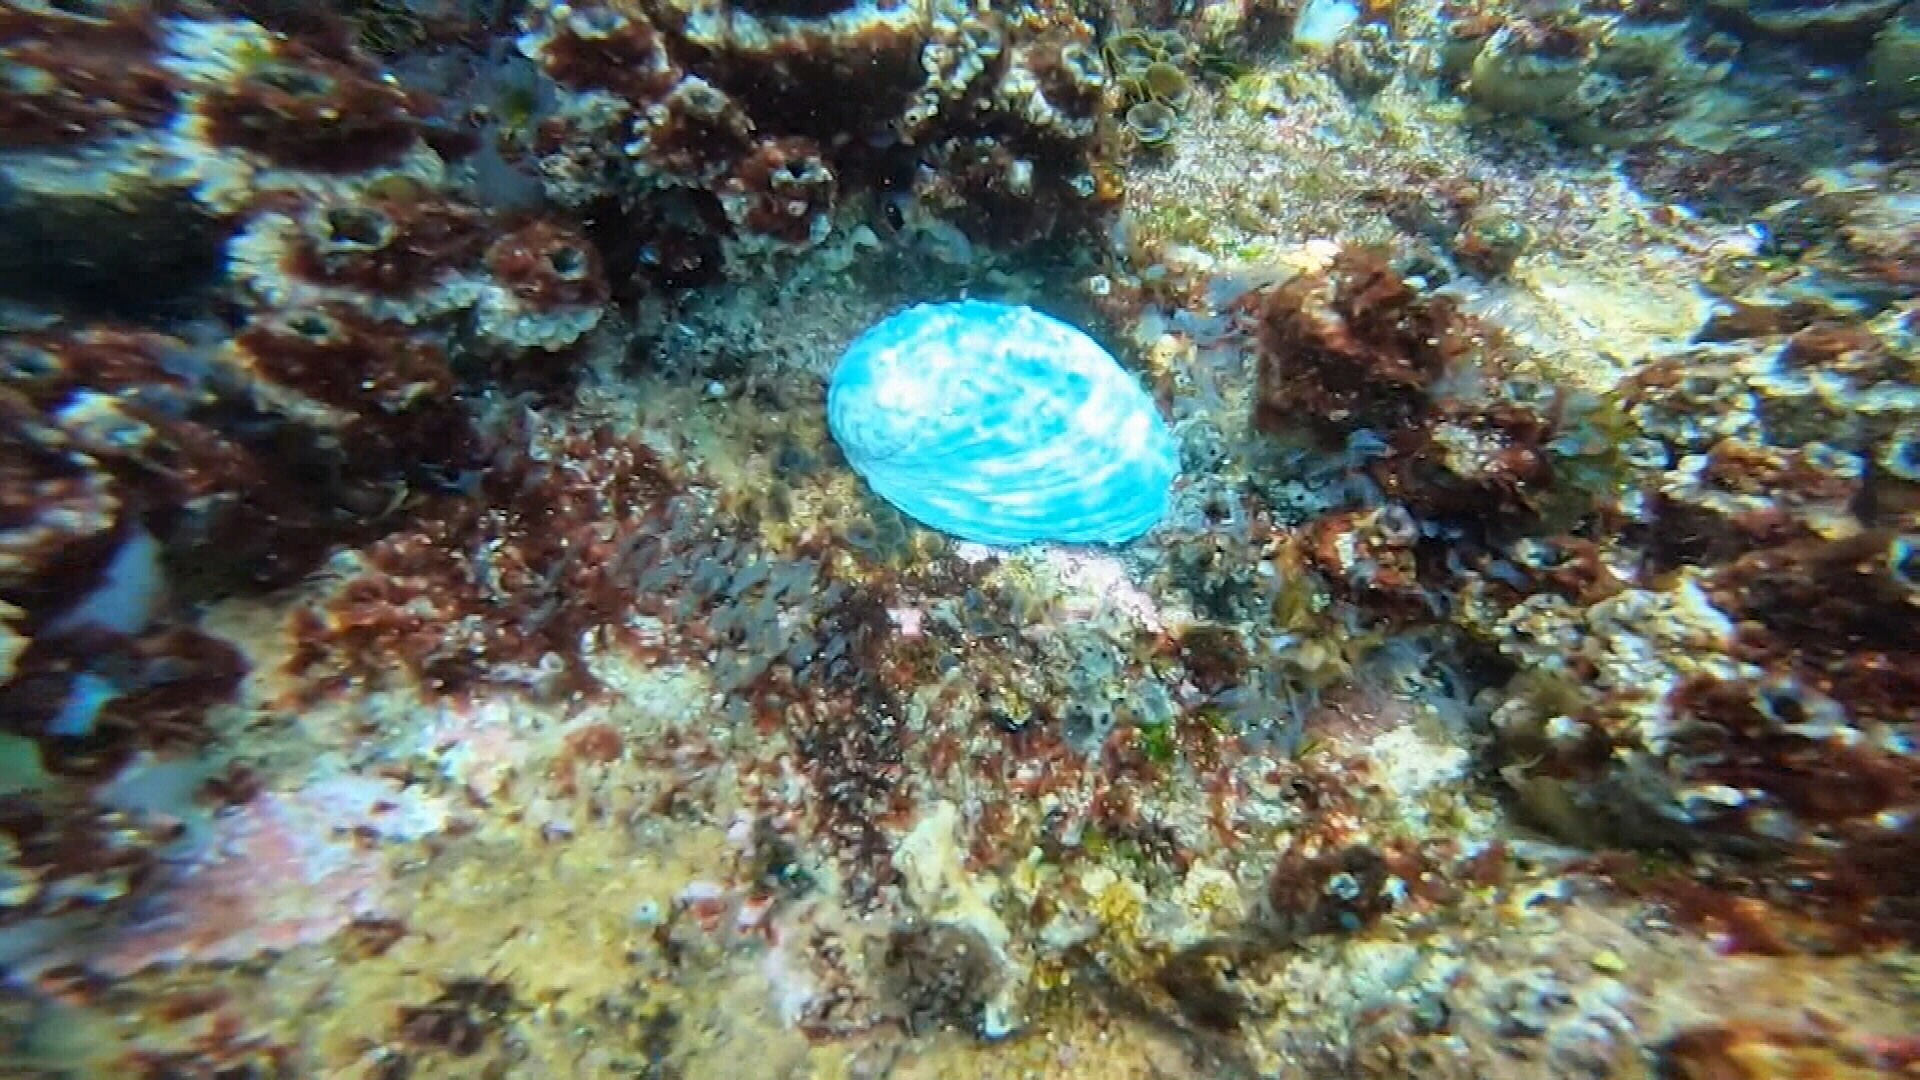 Loại bào ngư có màu xanh ngọc bích tuyệt đẹp nhưng khiến nhiều người lo ngại - 2